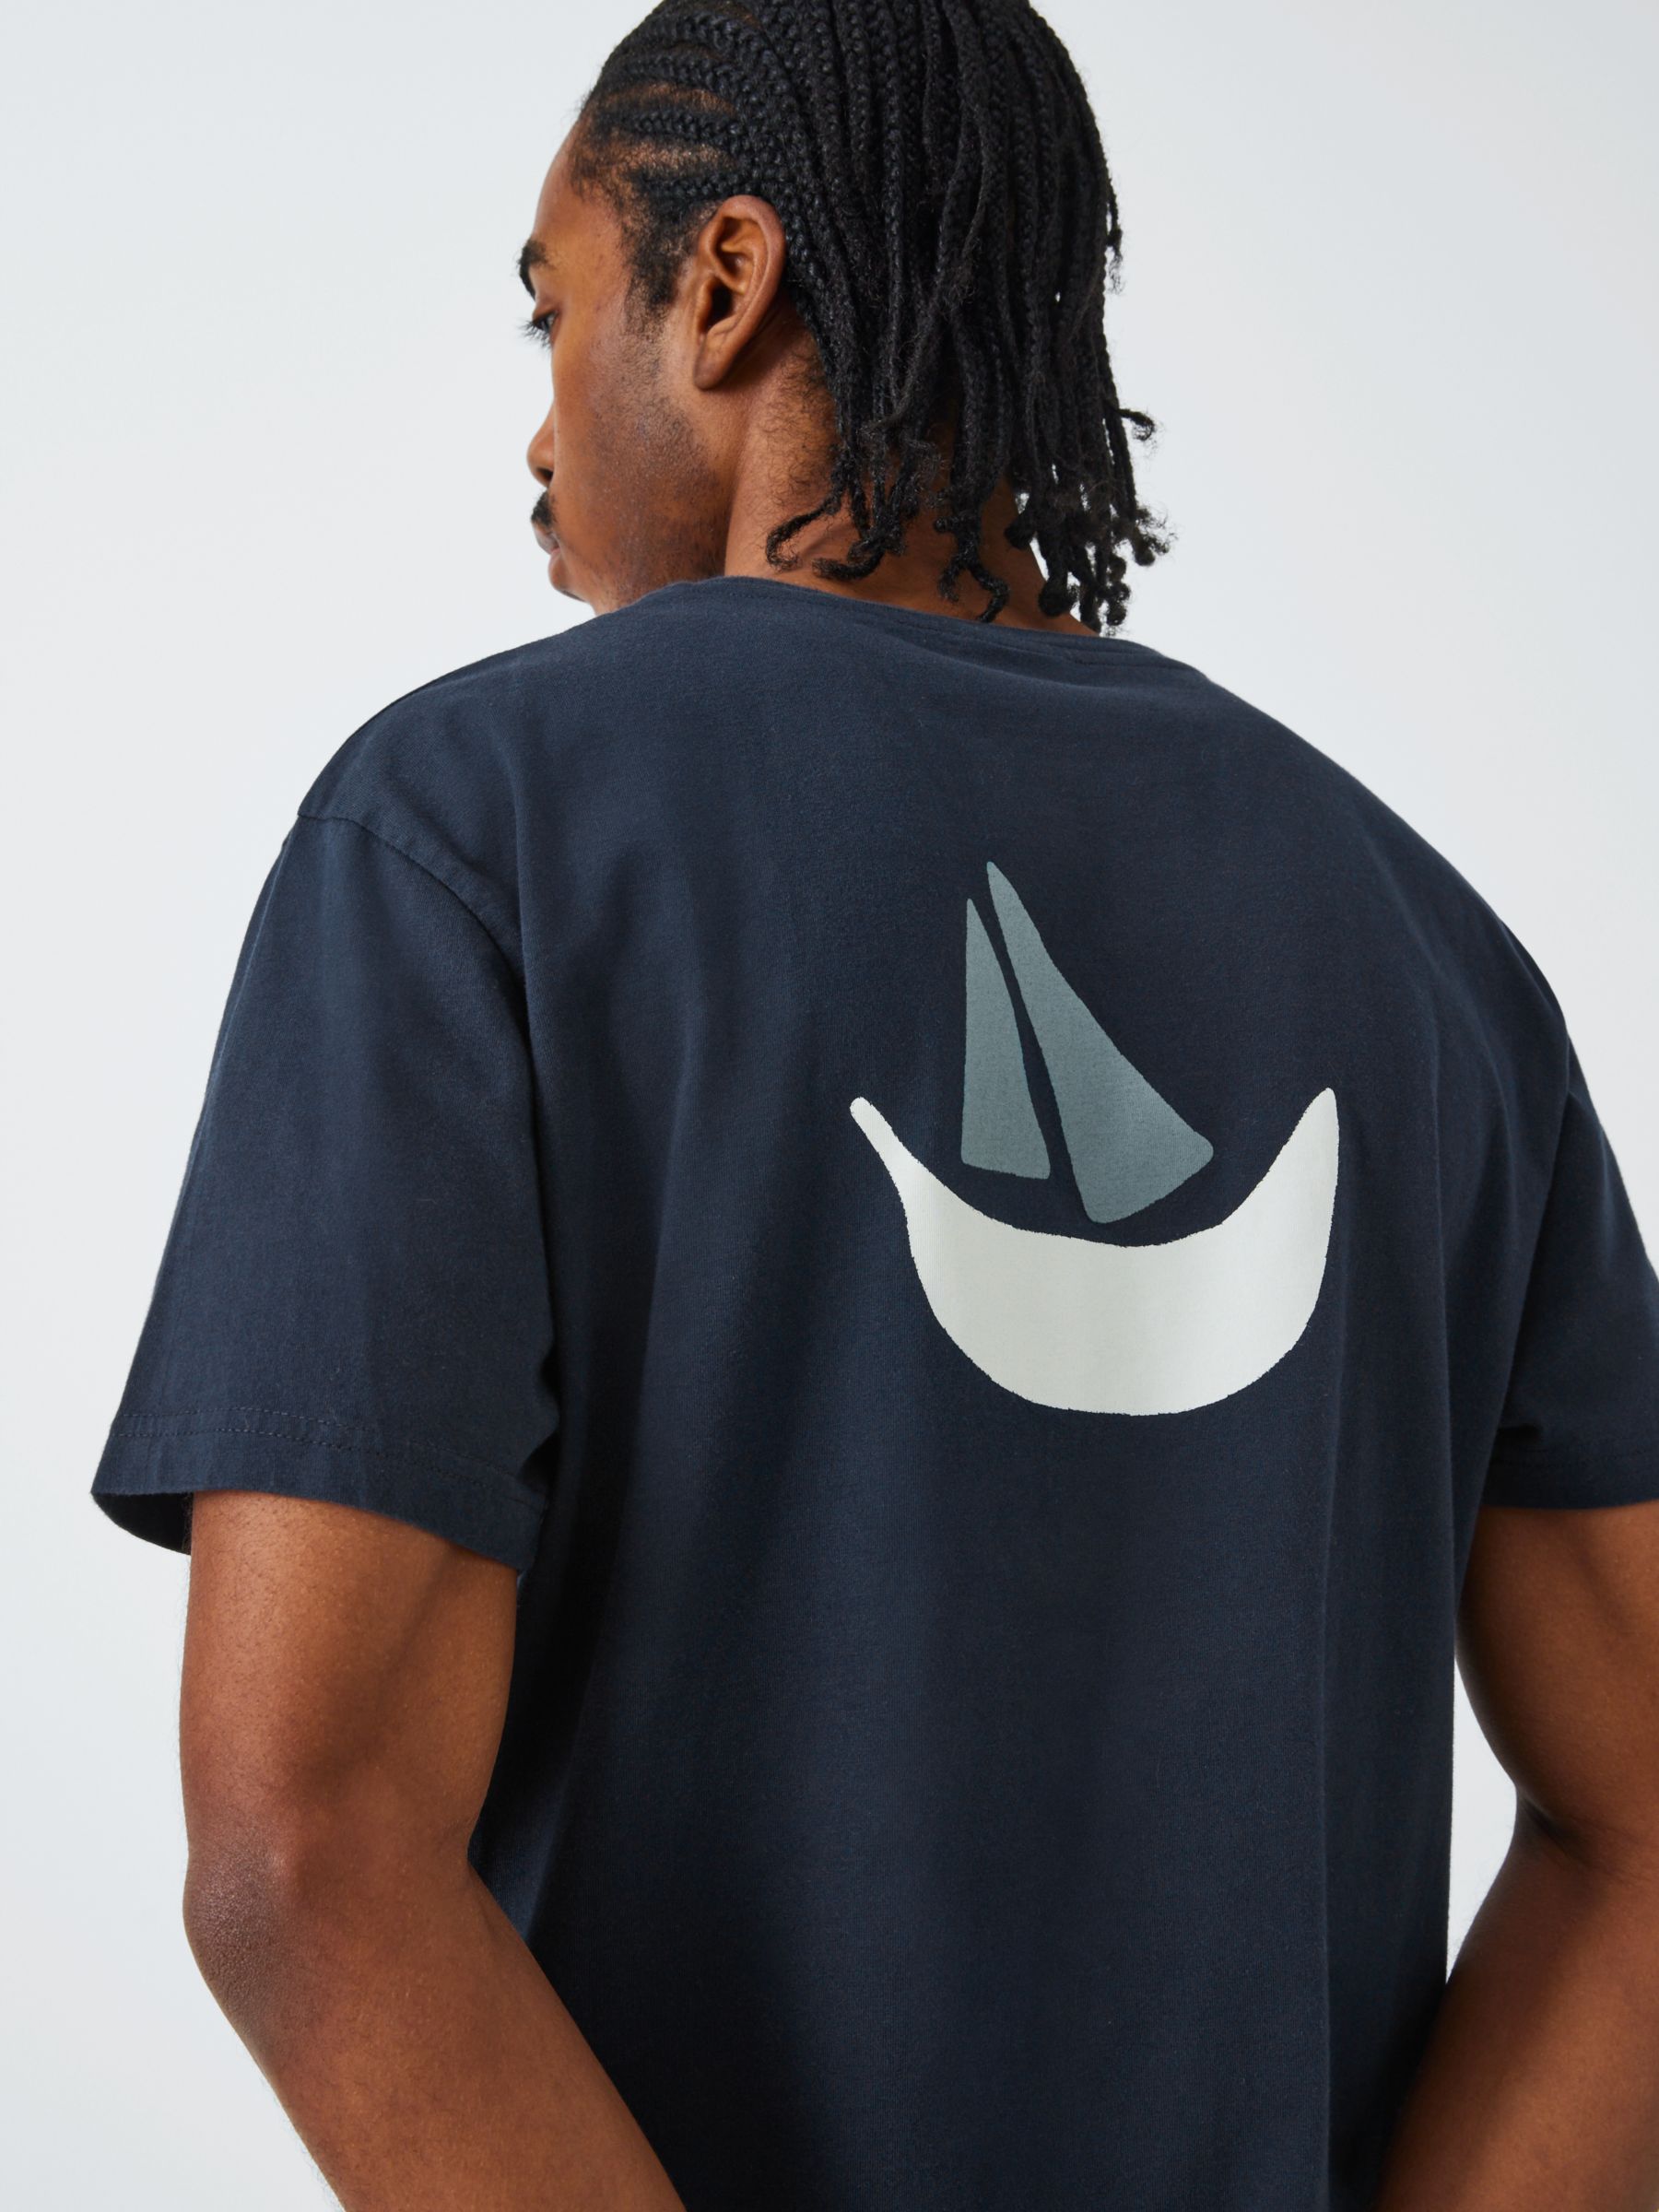 La Paz Print T-Shirt, Dark Navy, S